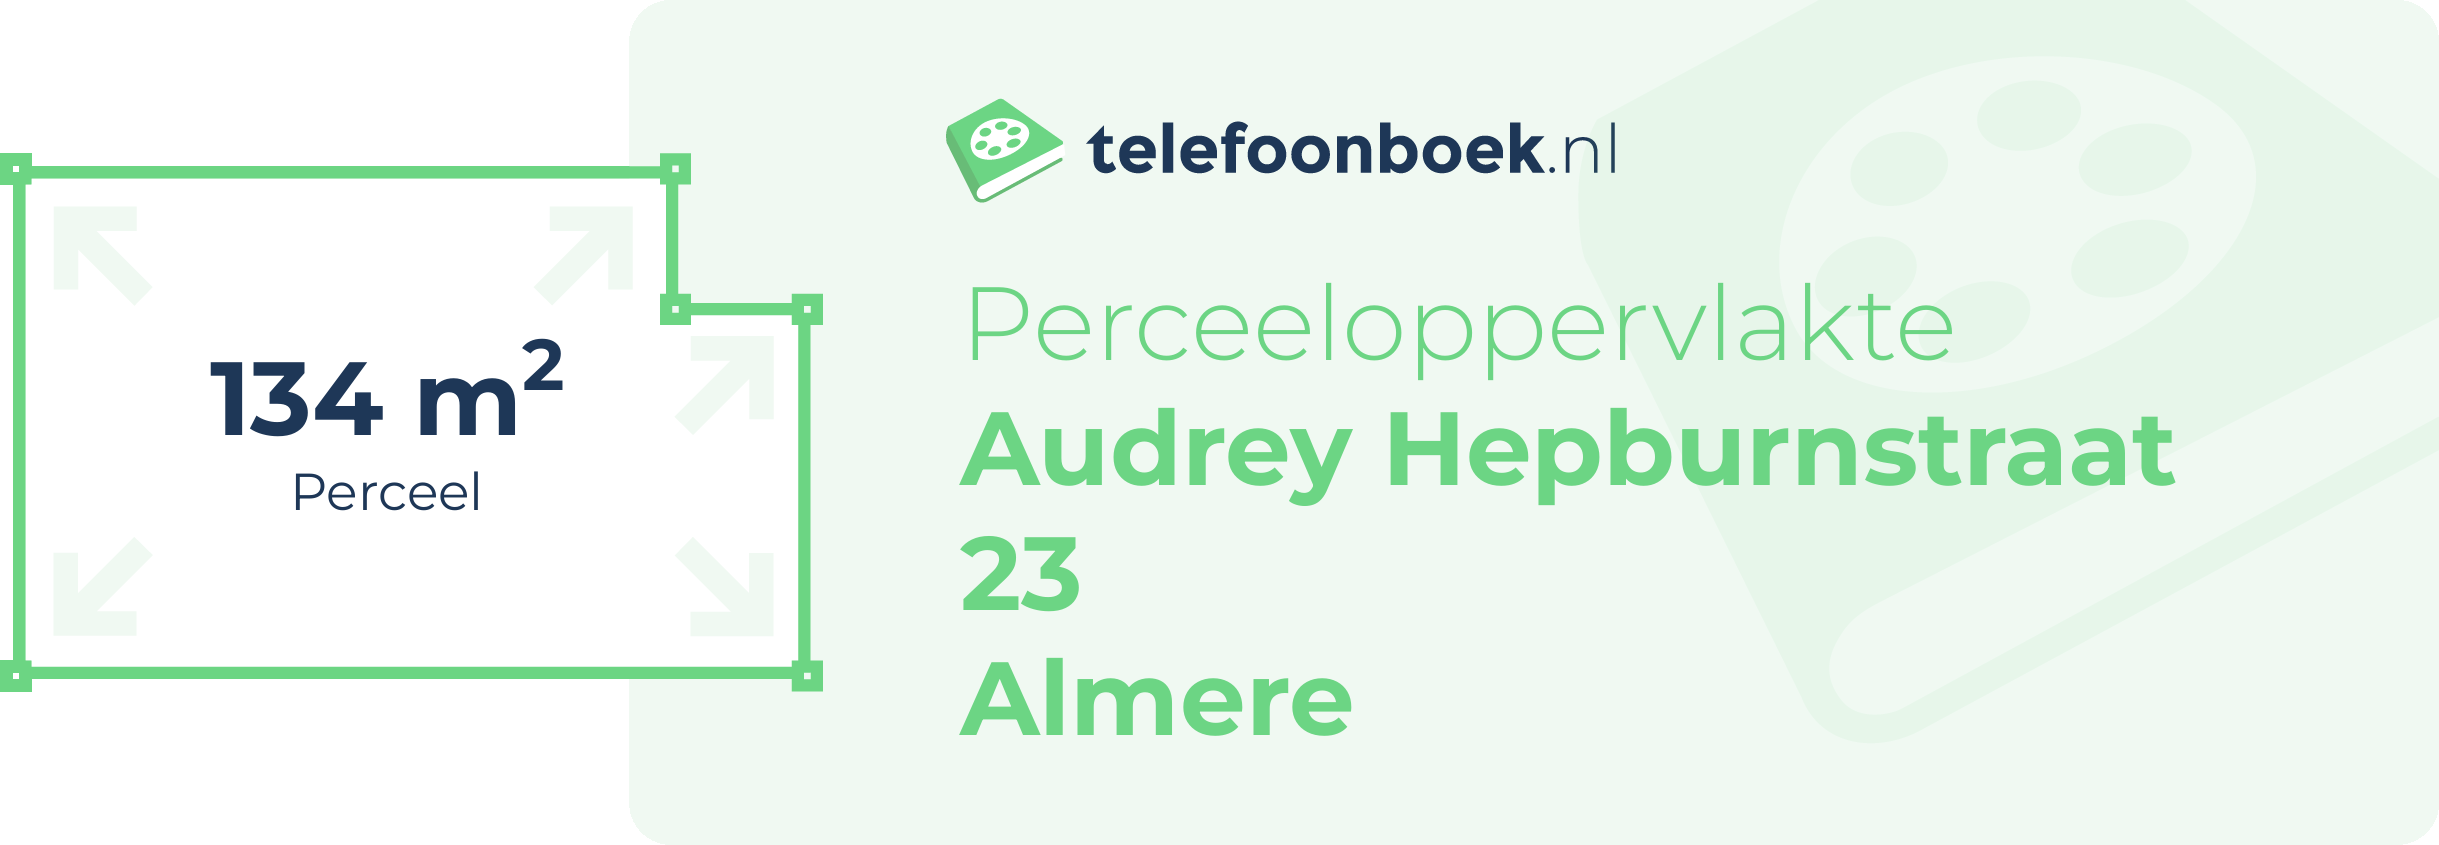 Perceeloppervlakte Audrey Hepburnstraat 23 Almere